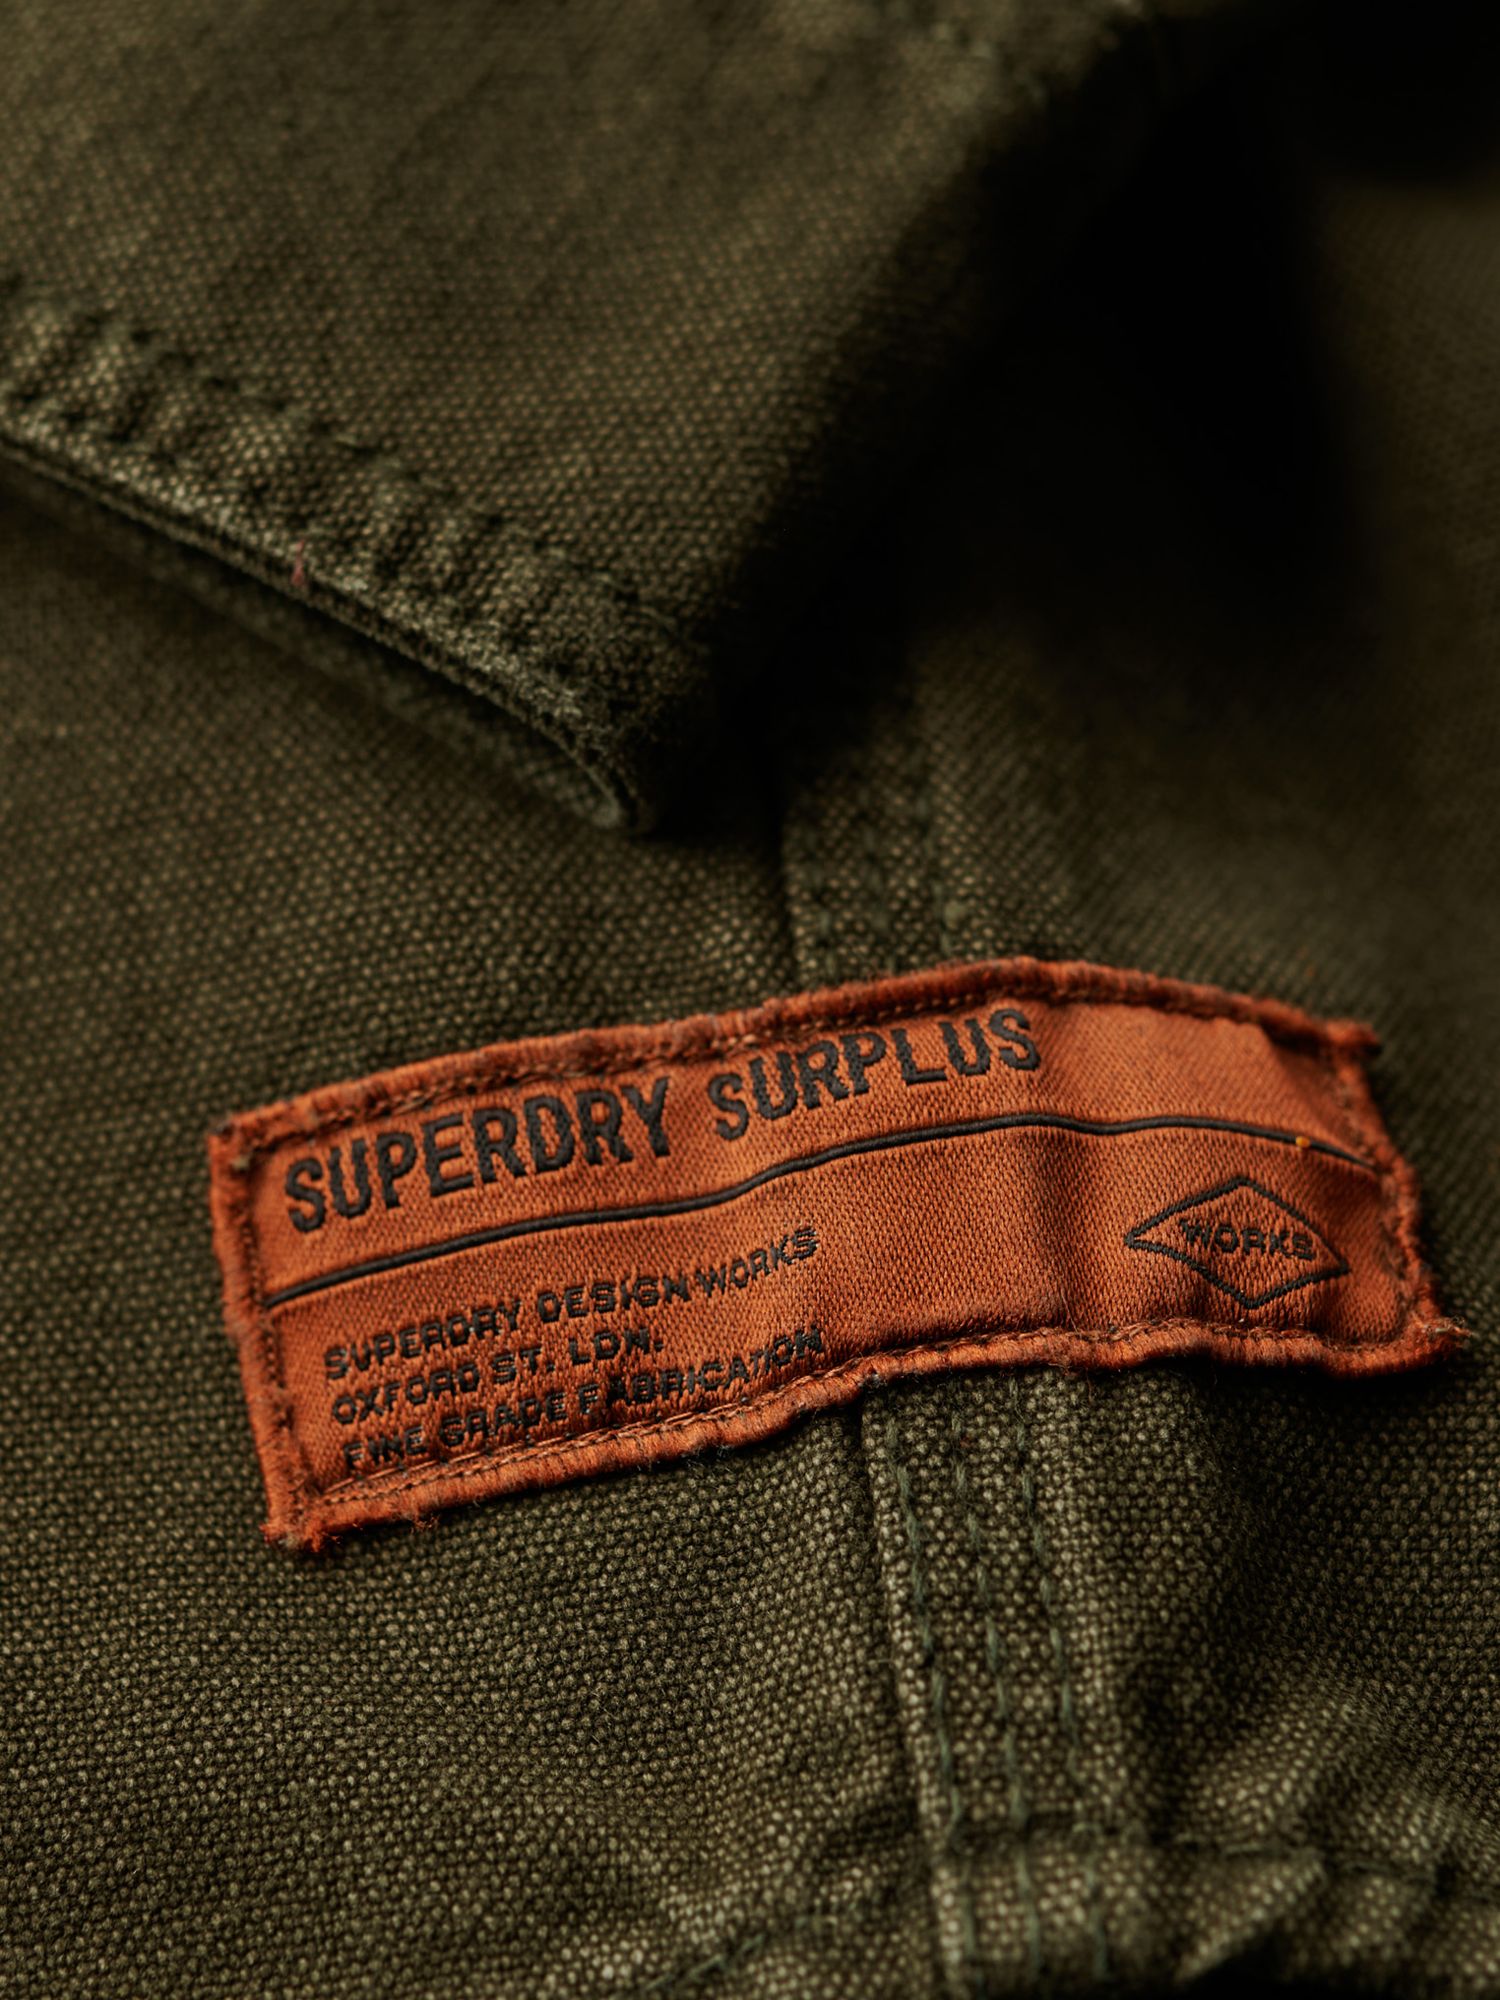 Superdry Surplus Canvas Overshirt, Army Khaki, XXXL